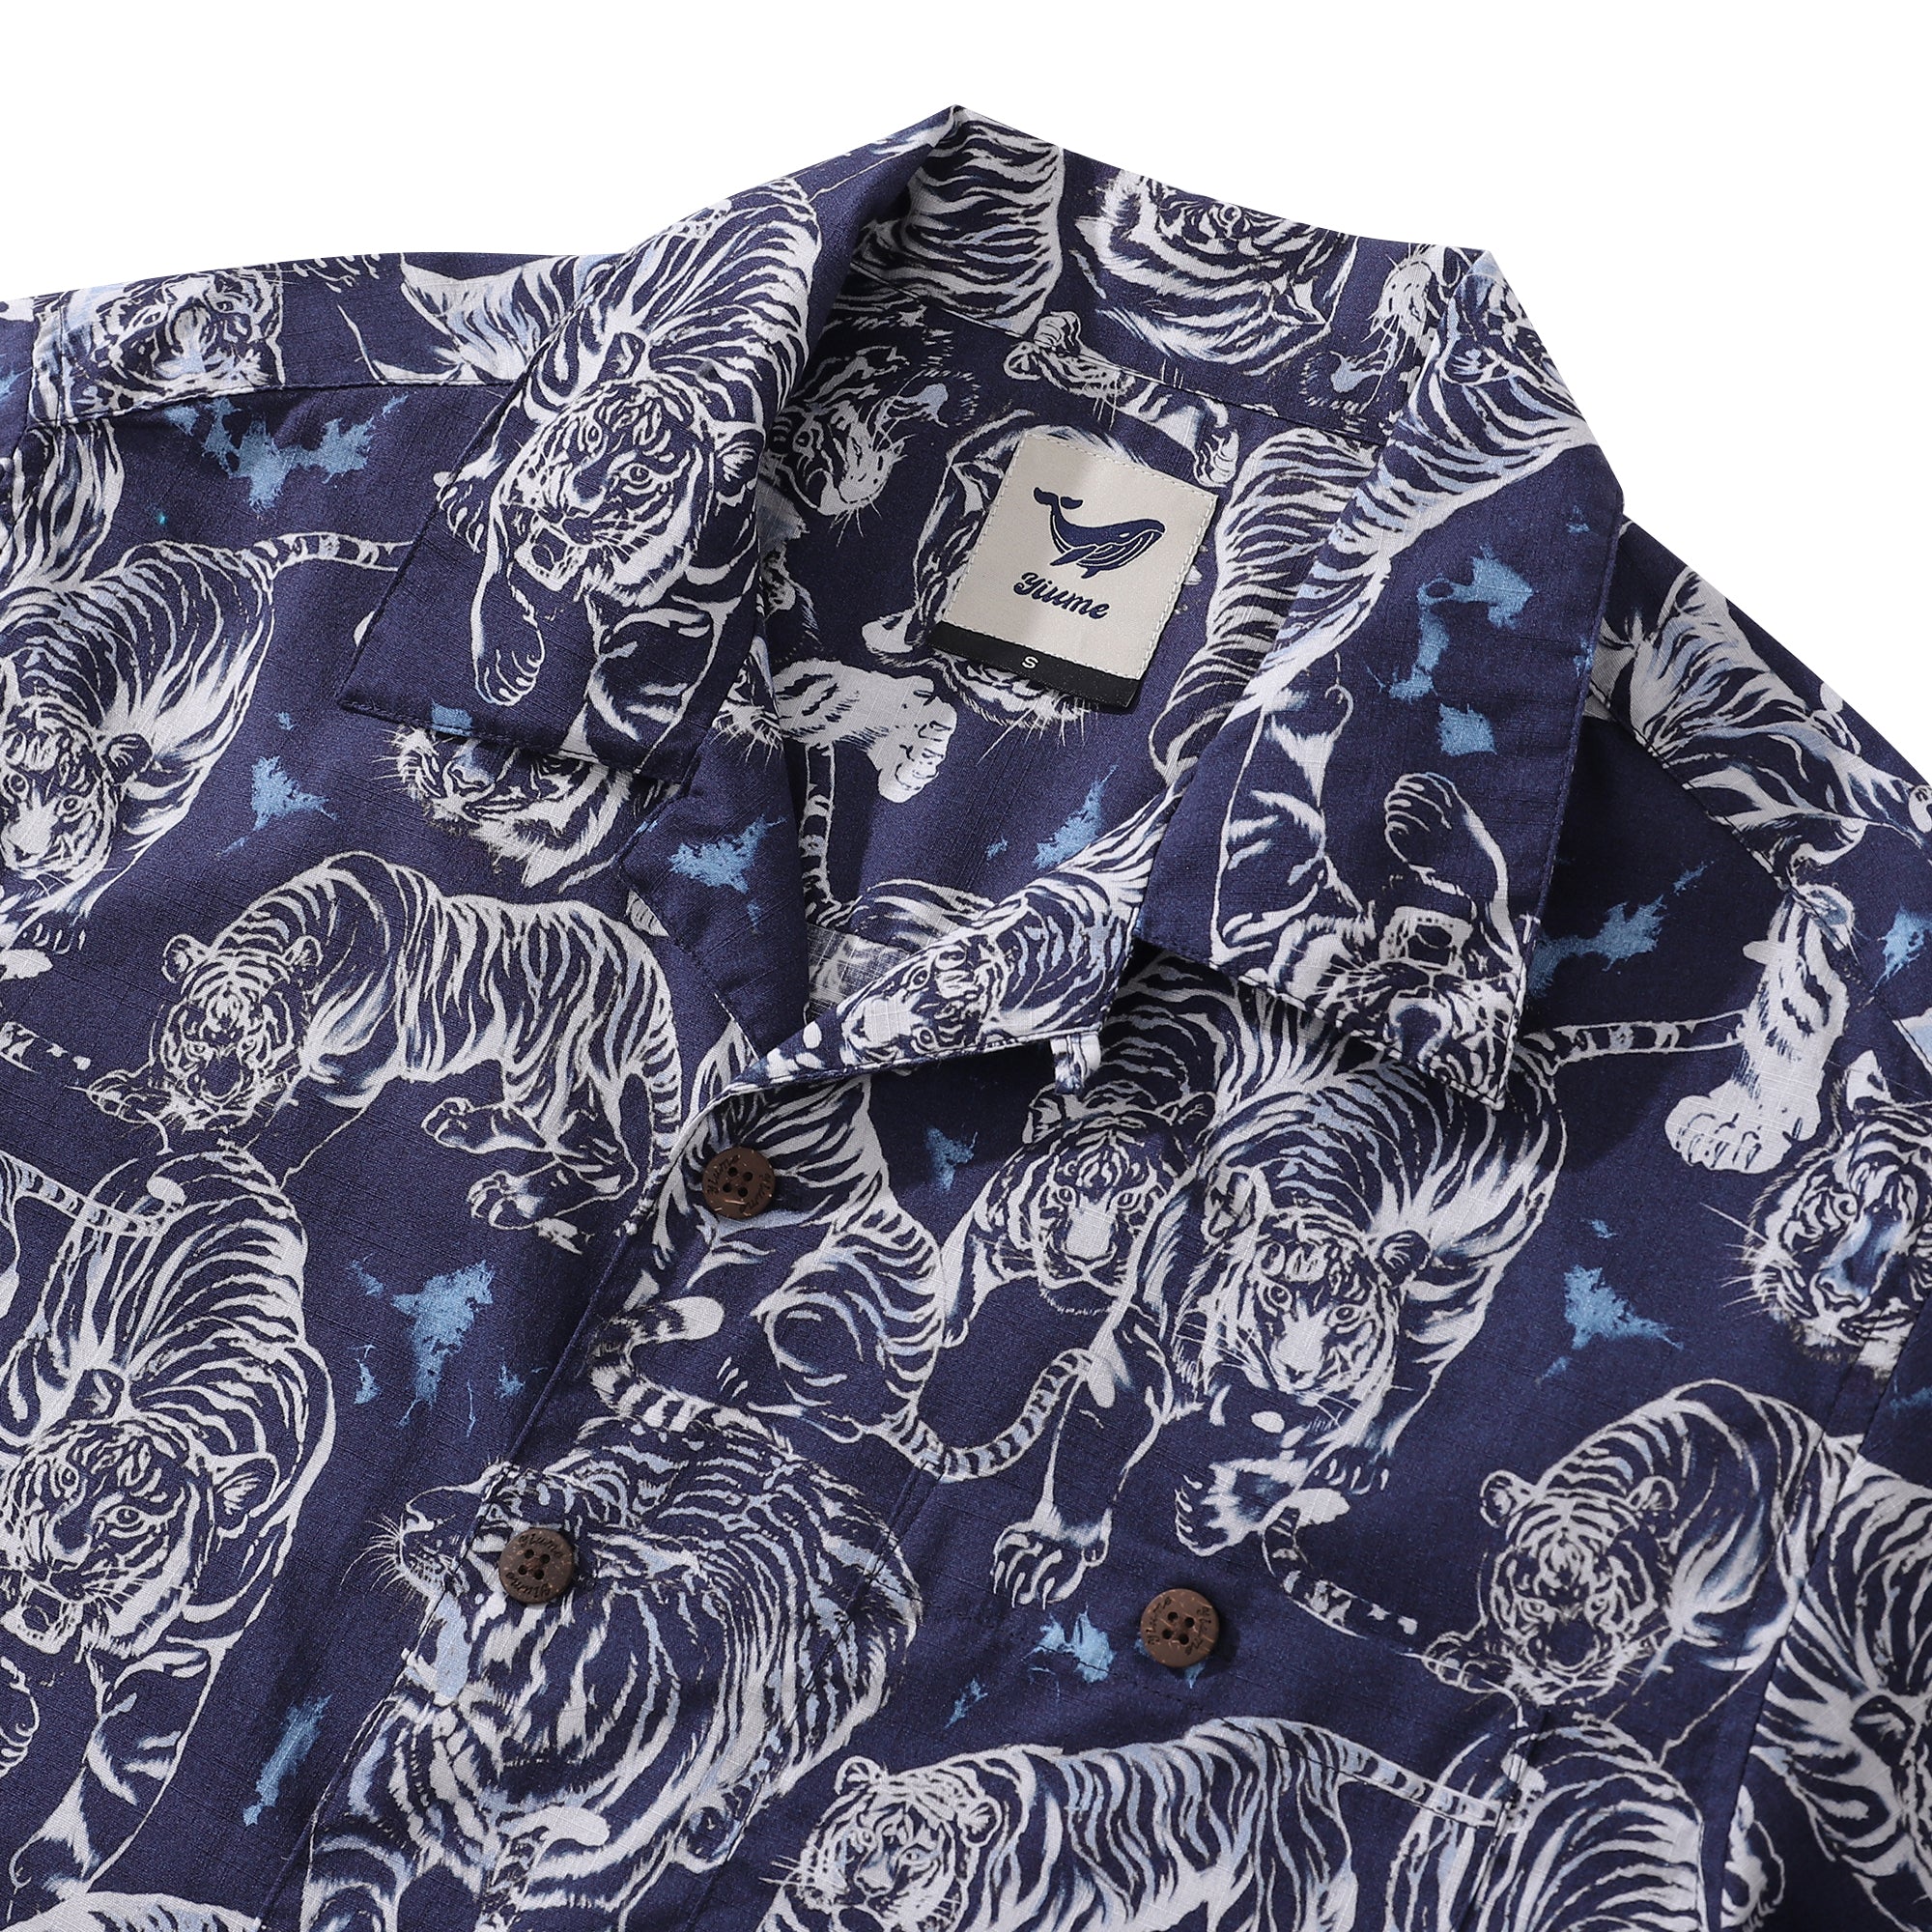 Hawaiian Shirt For Men Tiger King Contest Print Shirt Camp Collar 100% Cotton